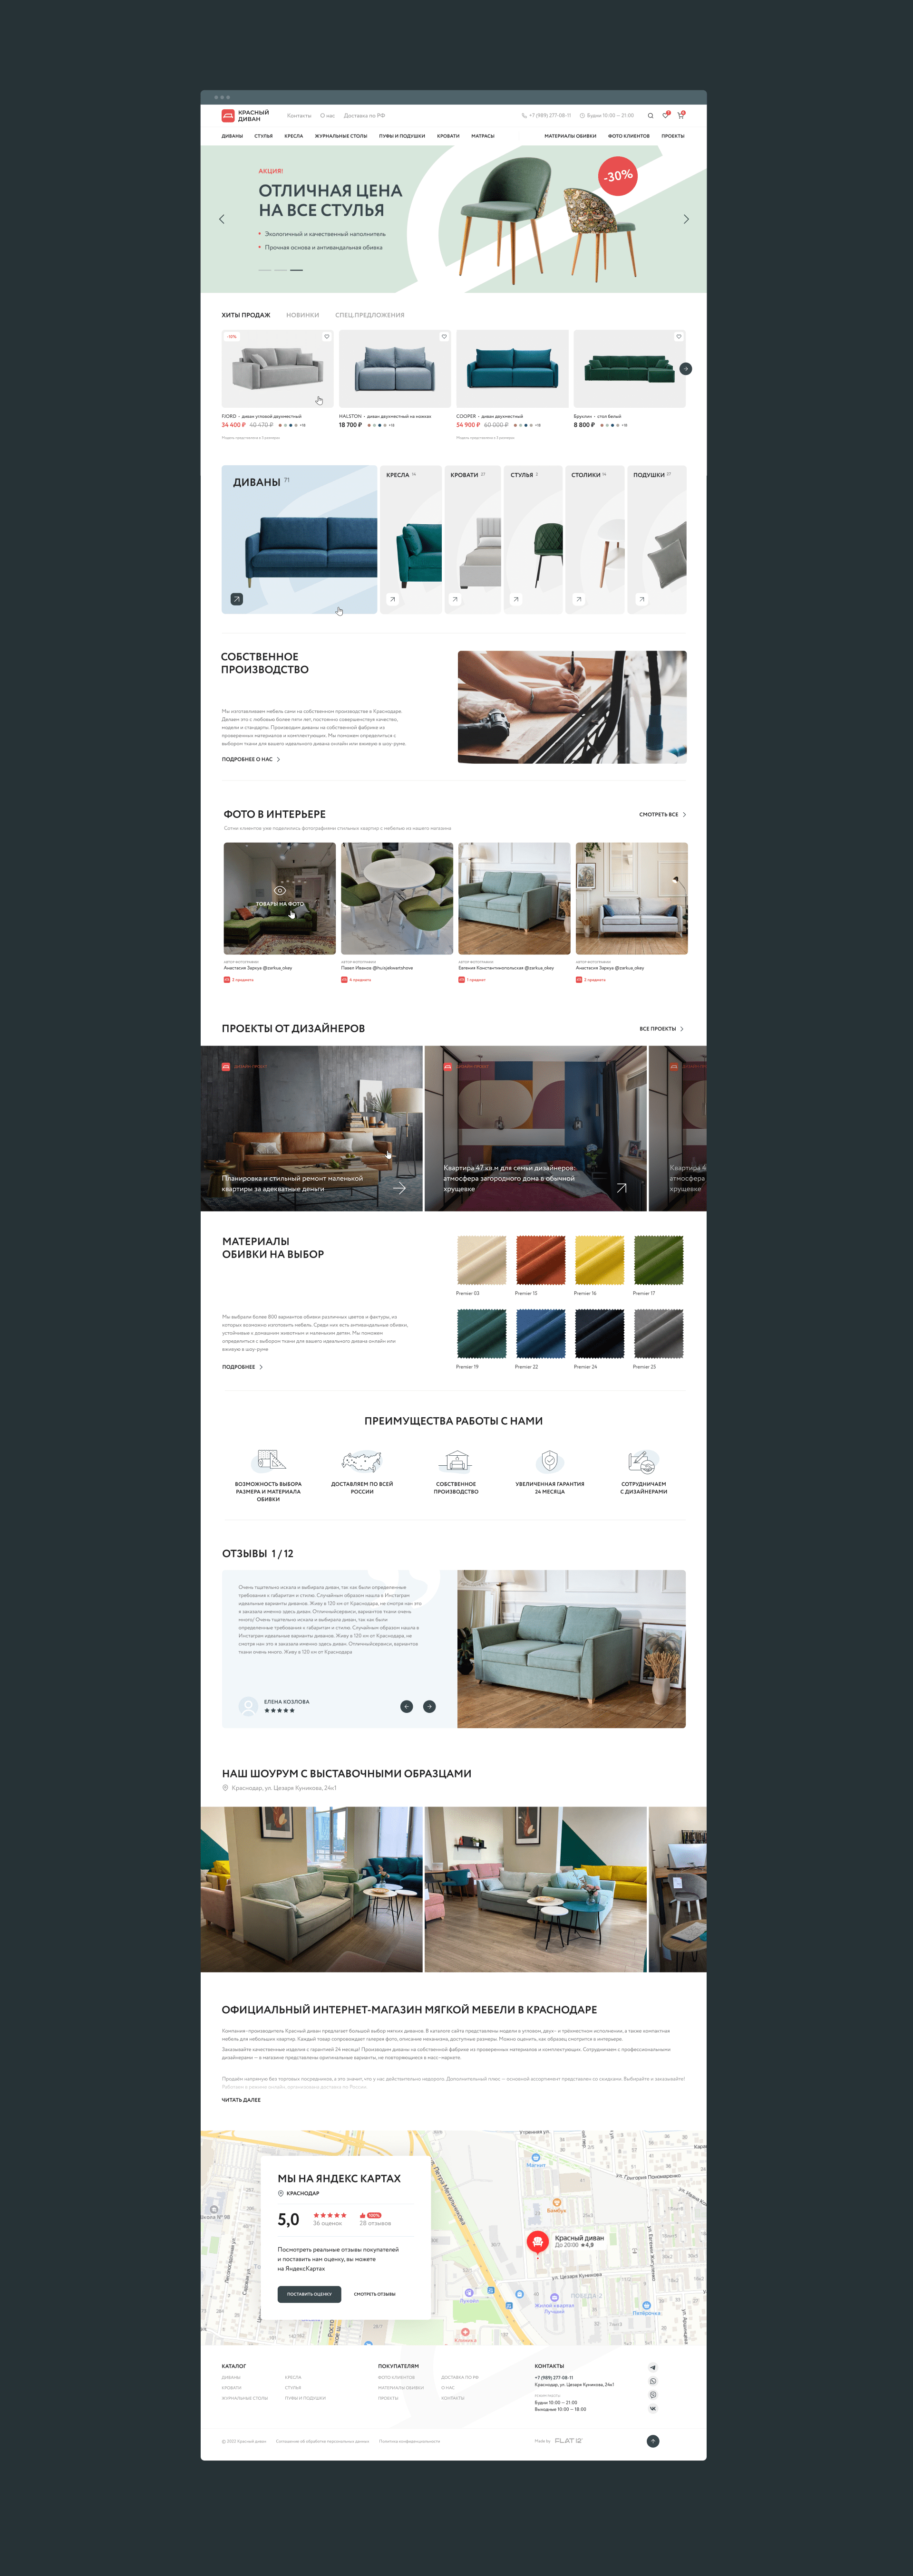 Красный диван — Изображение №2 — Интерфейсы, Анимация на Dprofile